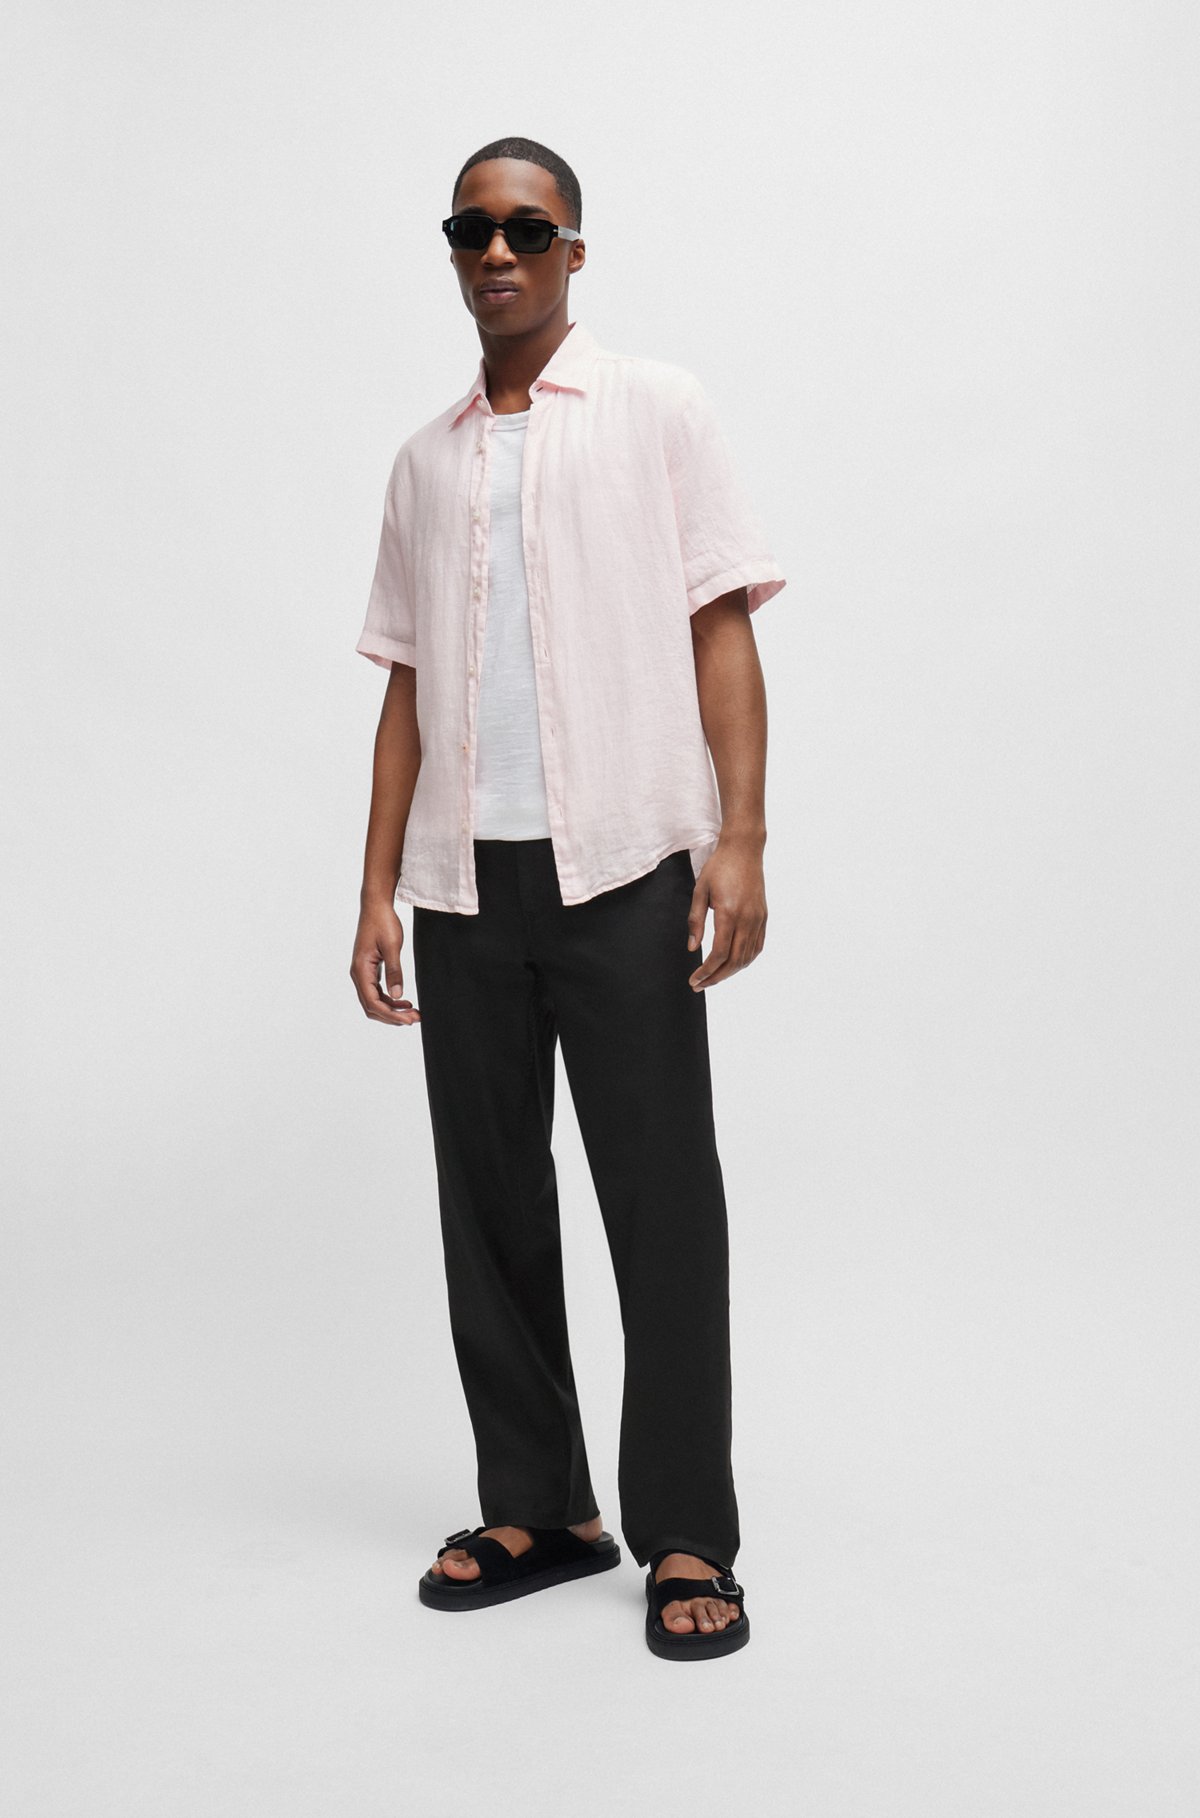 Regular-fit shirt in linen canvas, light pink